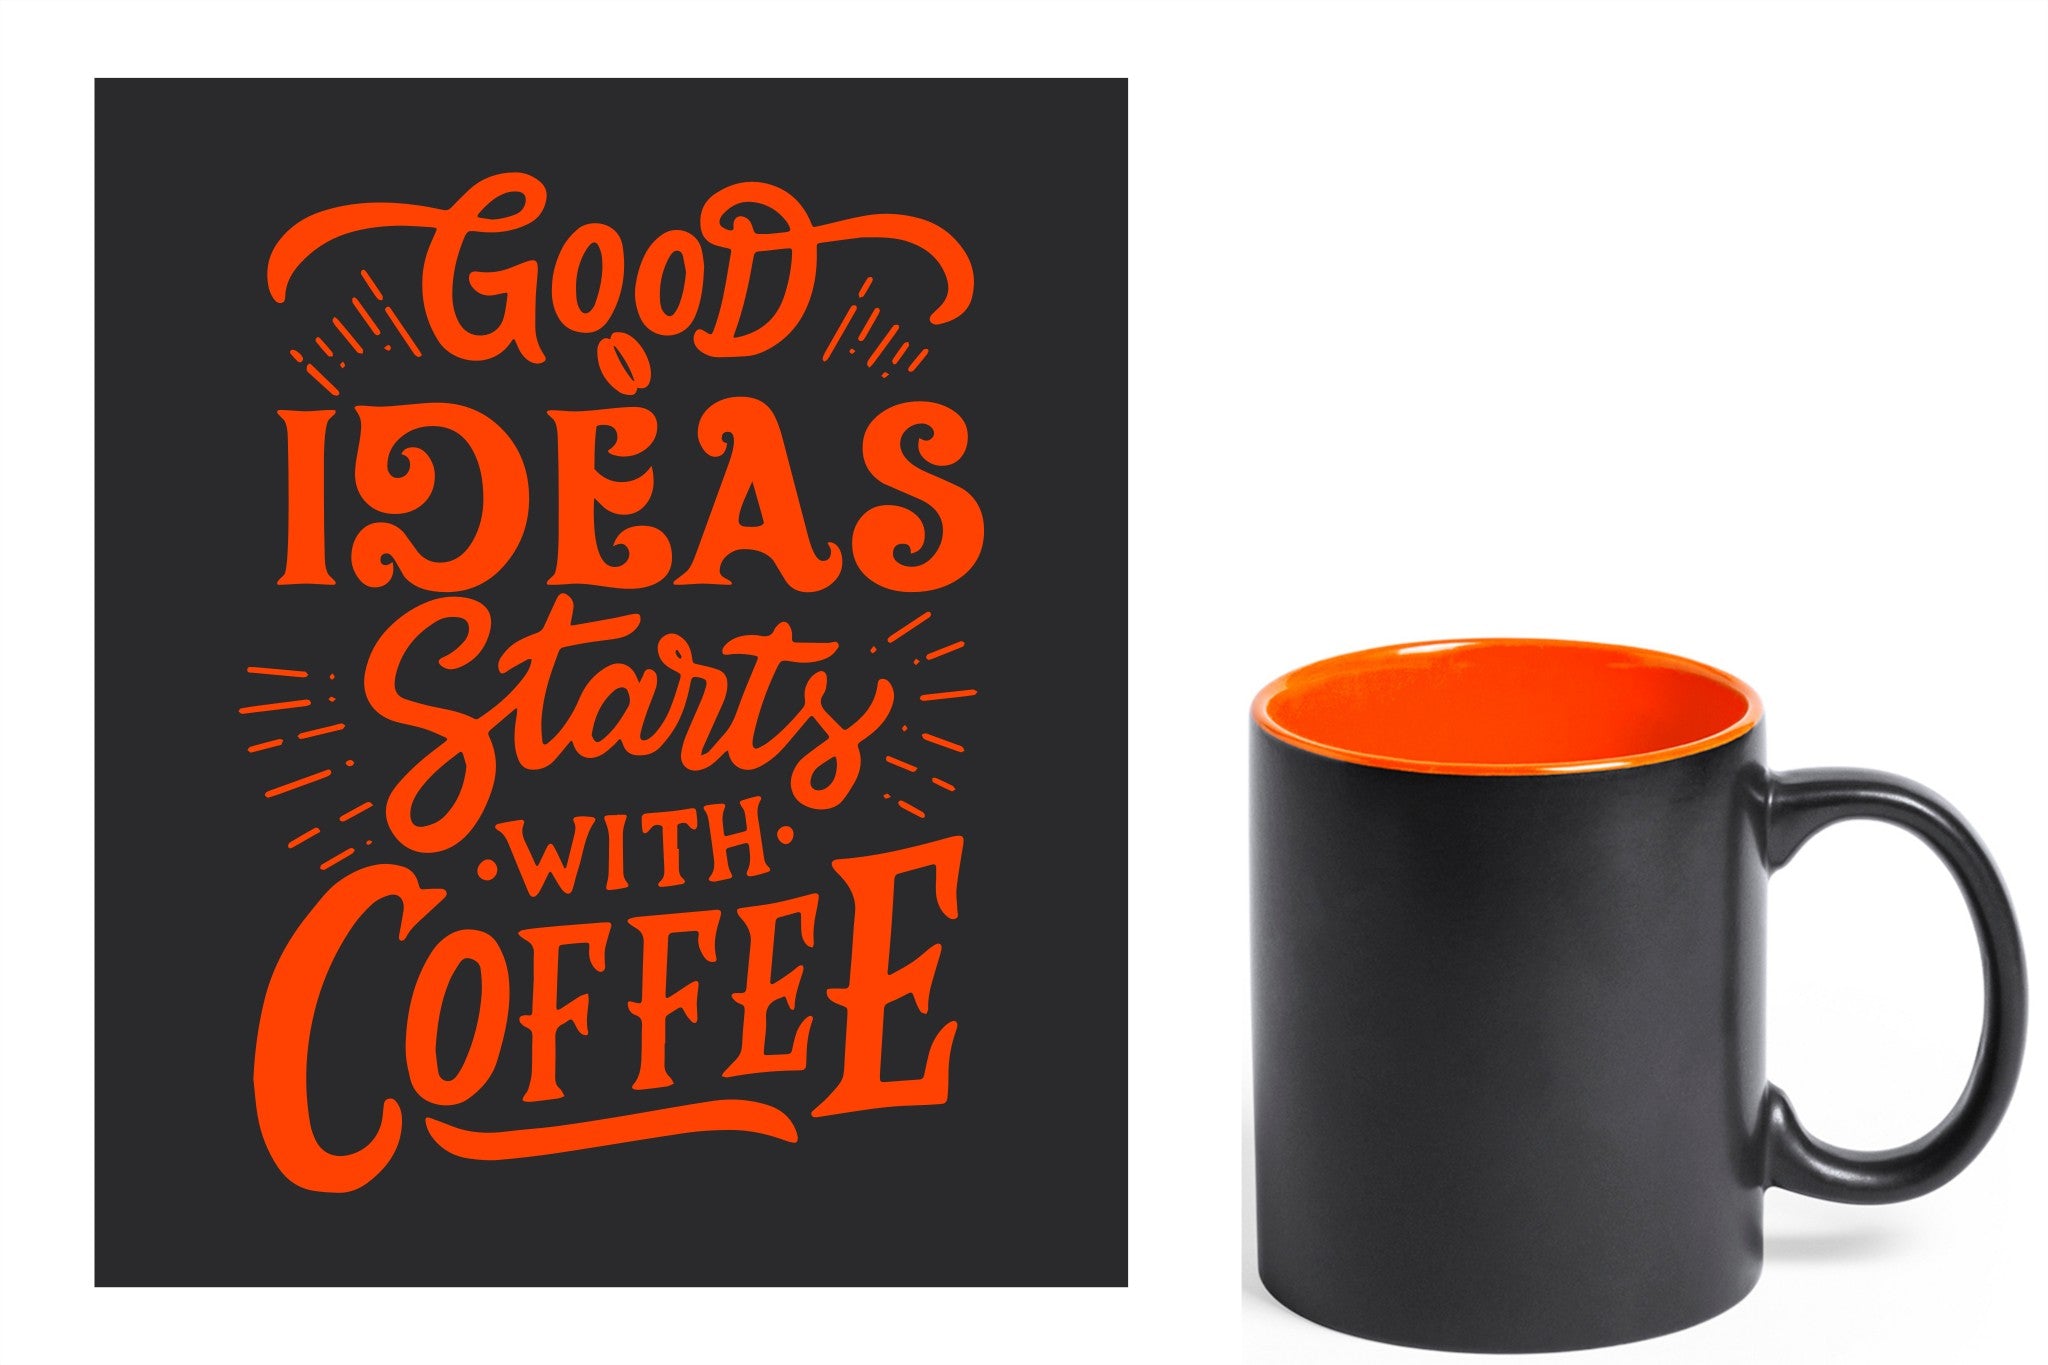 zwarte keramische mok met oranje gravure  'Good ideas starts with coffee'.